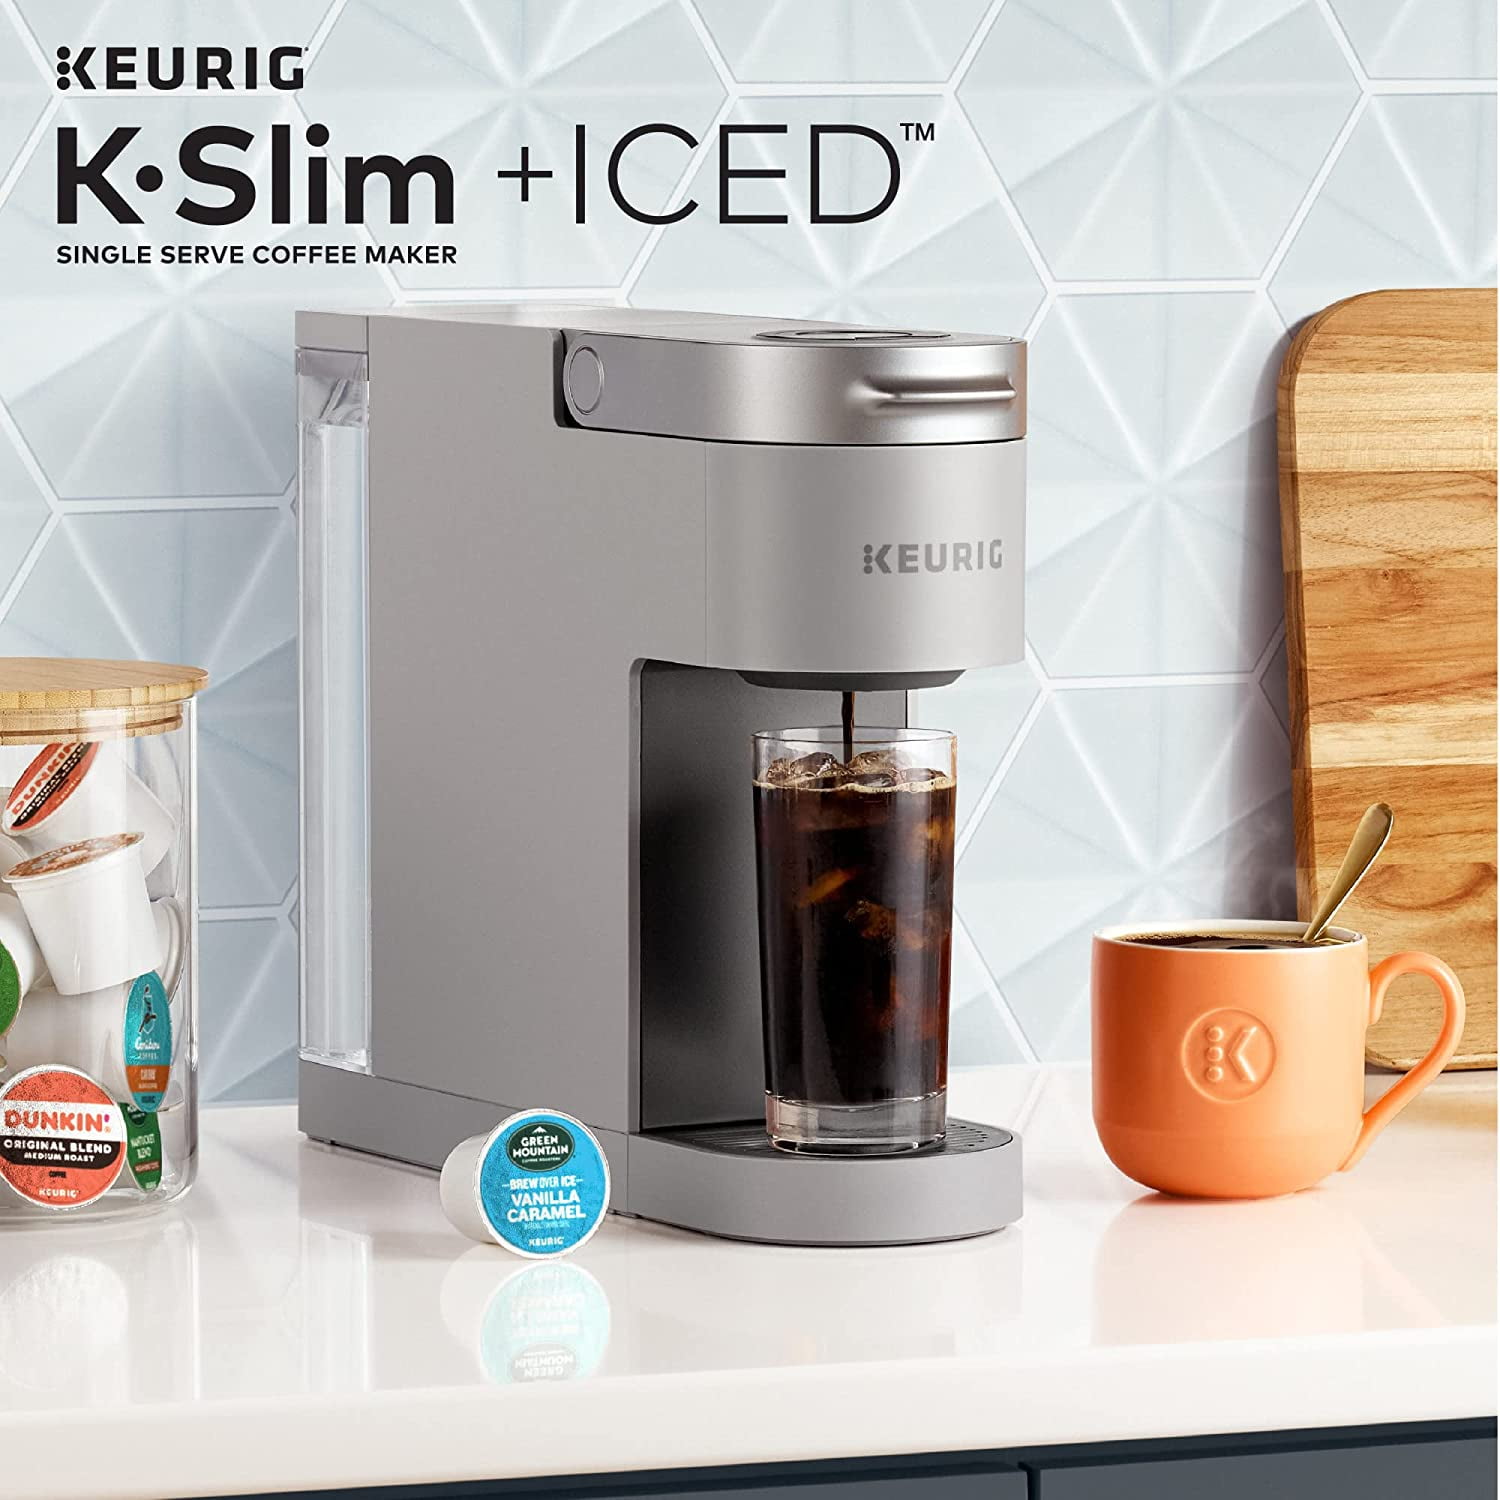 Walmart Cyber Keurig K-Slim + Iced Single Serve Coffee Maker Review 